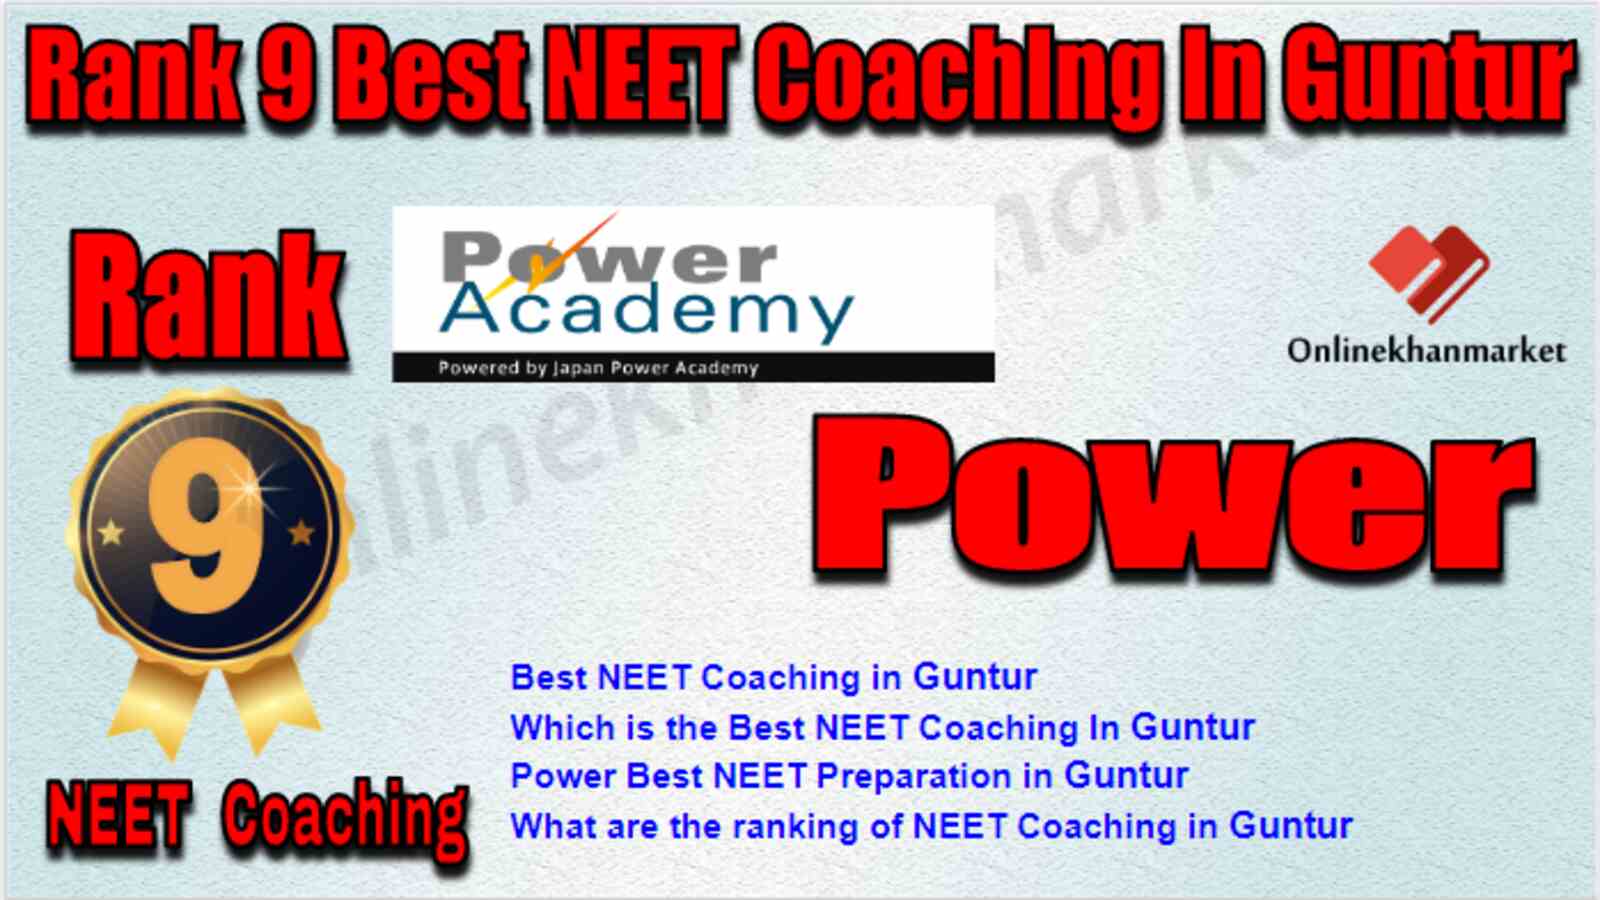 Rank 9 Best NEET Coaching in Guntur